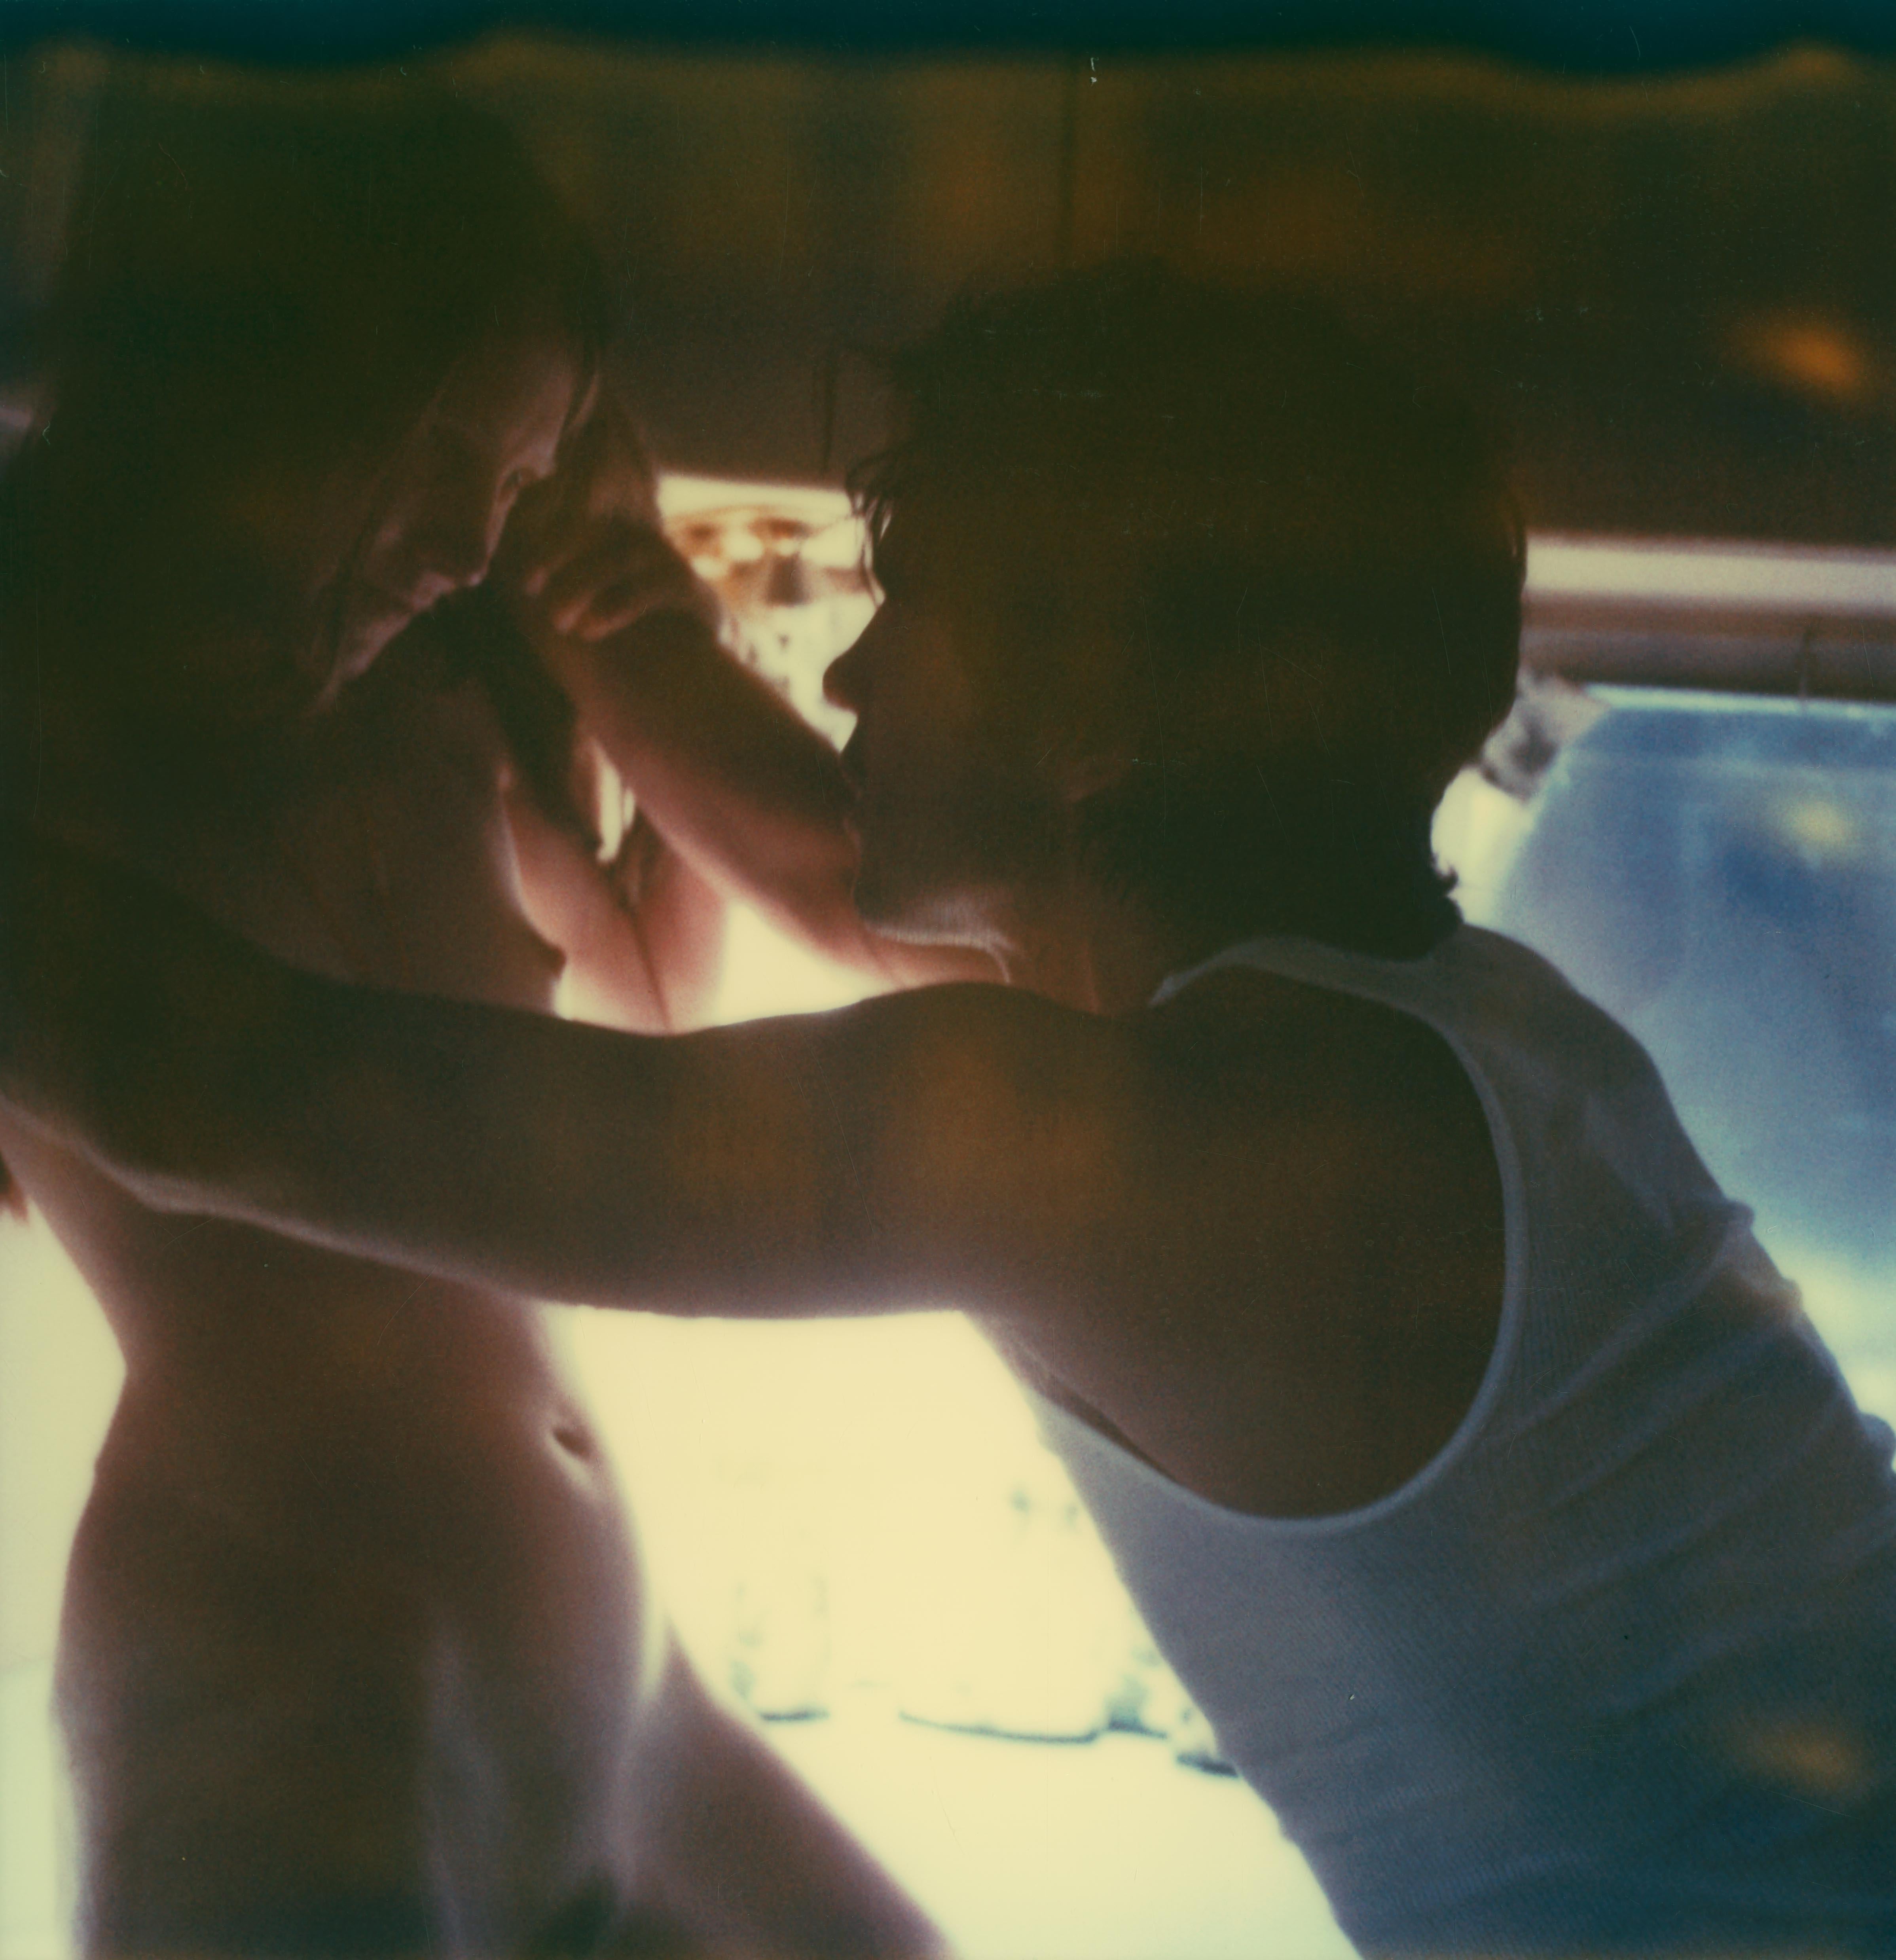 The Love Scene against the Wall (Sidewinder) - 100x320cm, Polaroid, Contemporary (Zeitgenössisch), Photograph, von Stefanie Schneider